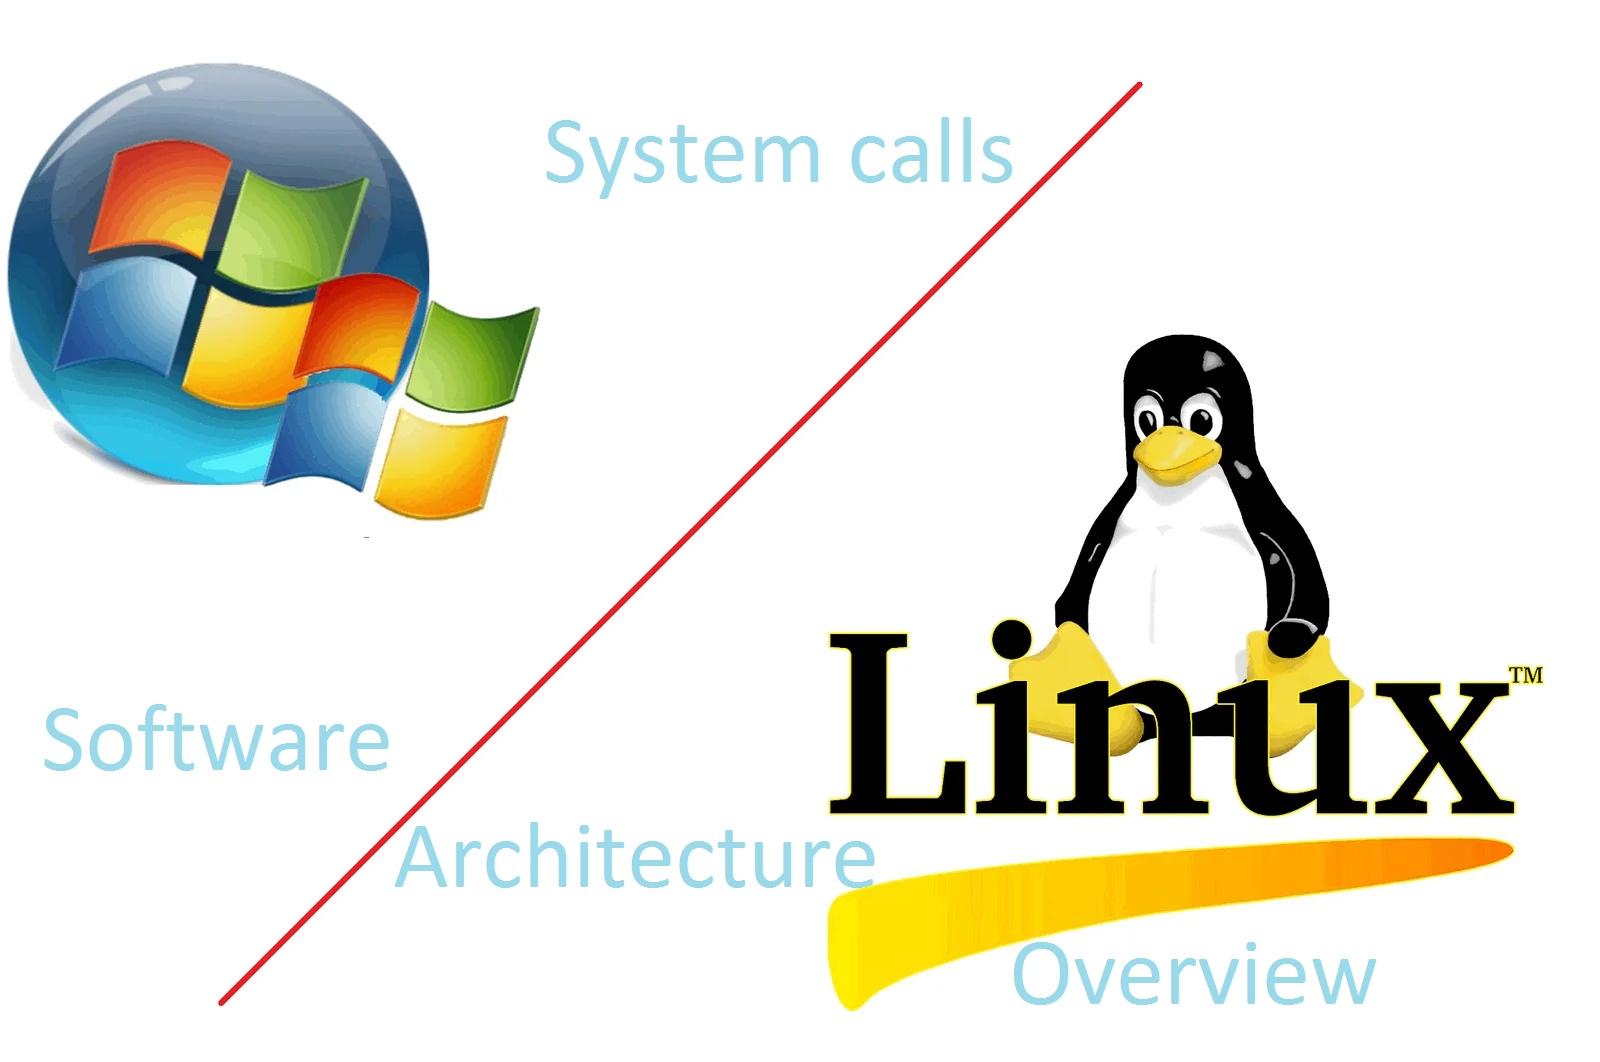 Banner of linux vs windows